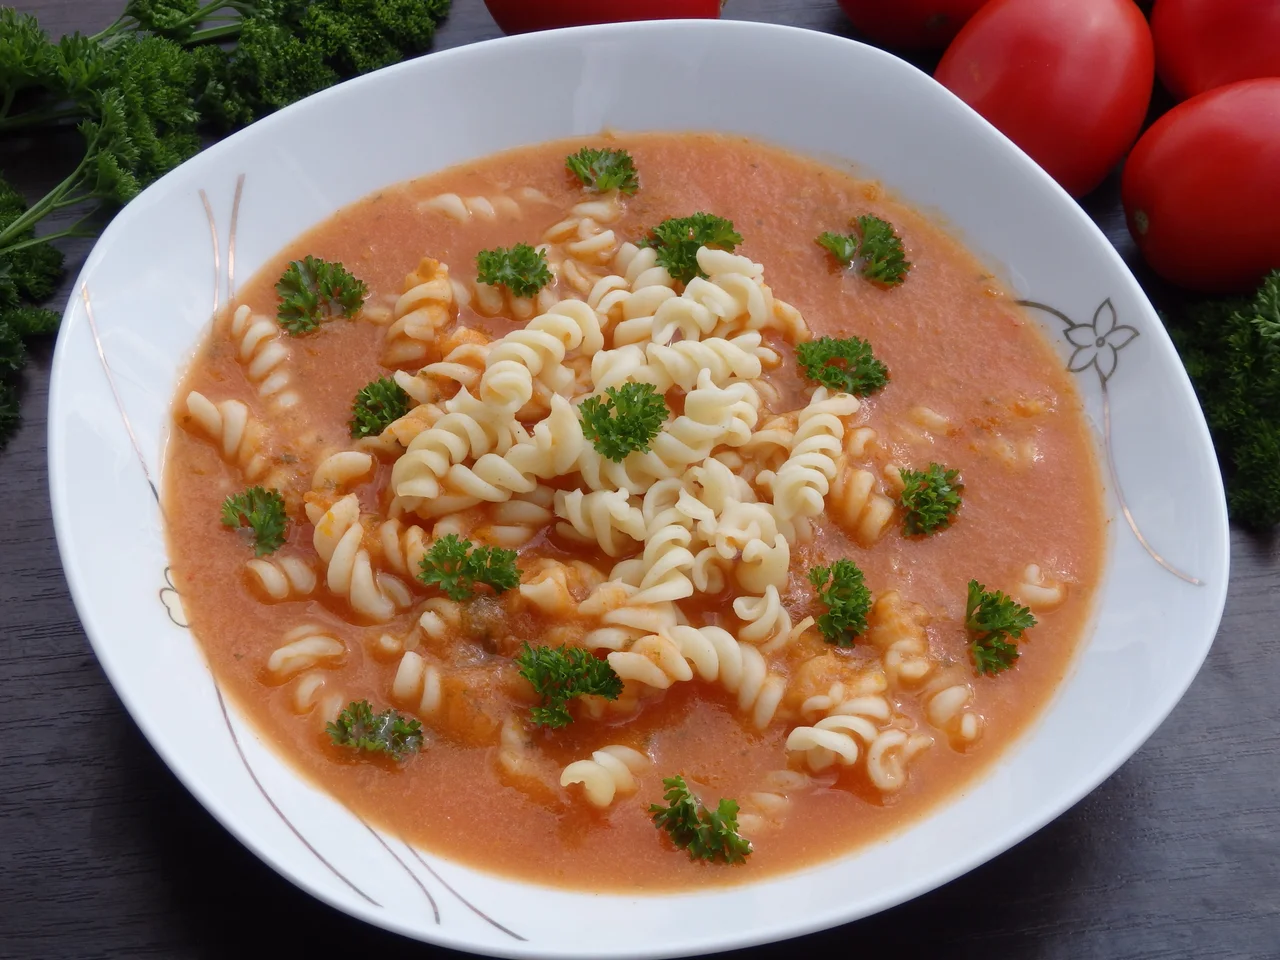 Gęsta zupa pomidorowa ze świeżych pomidorów